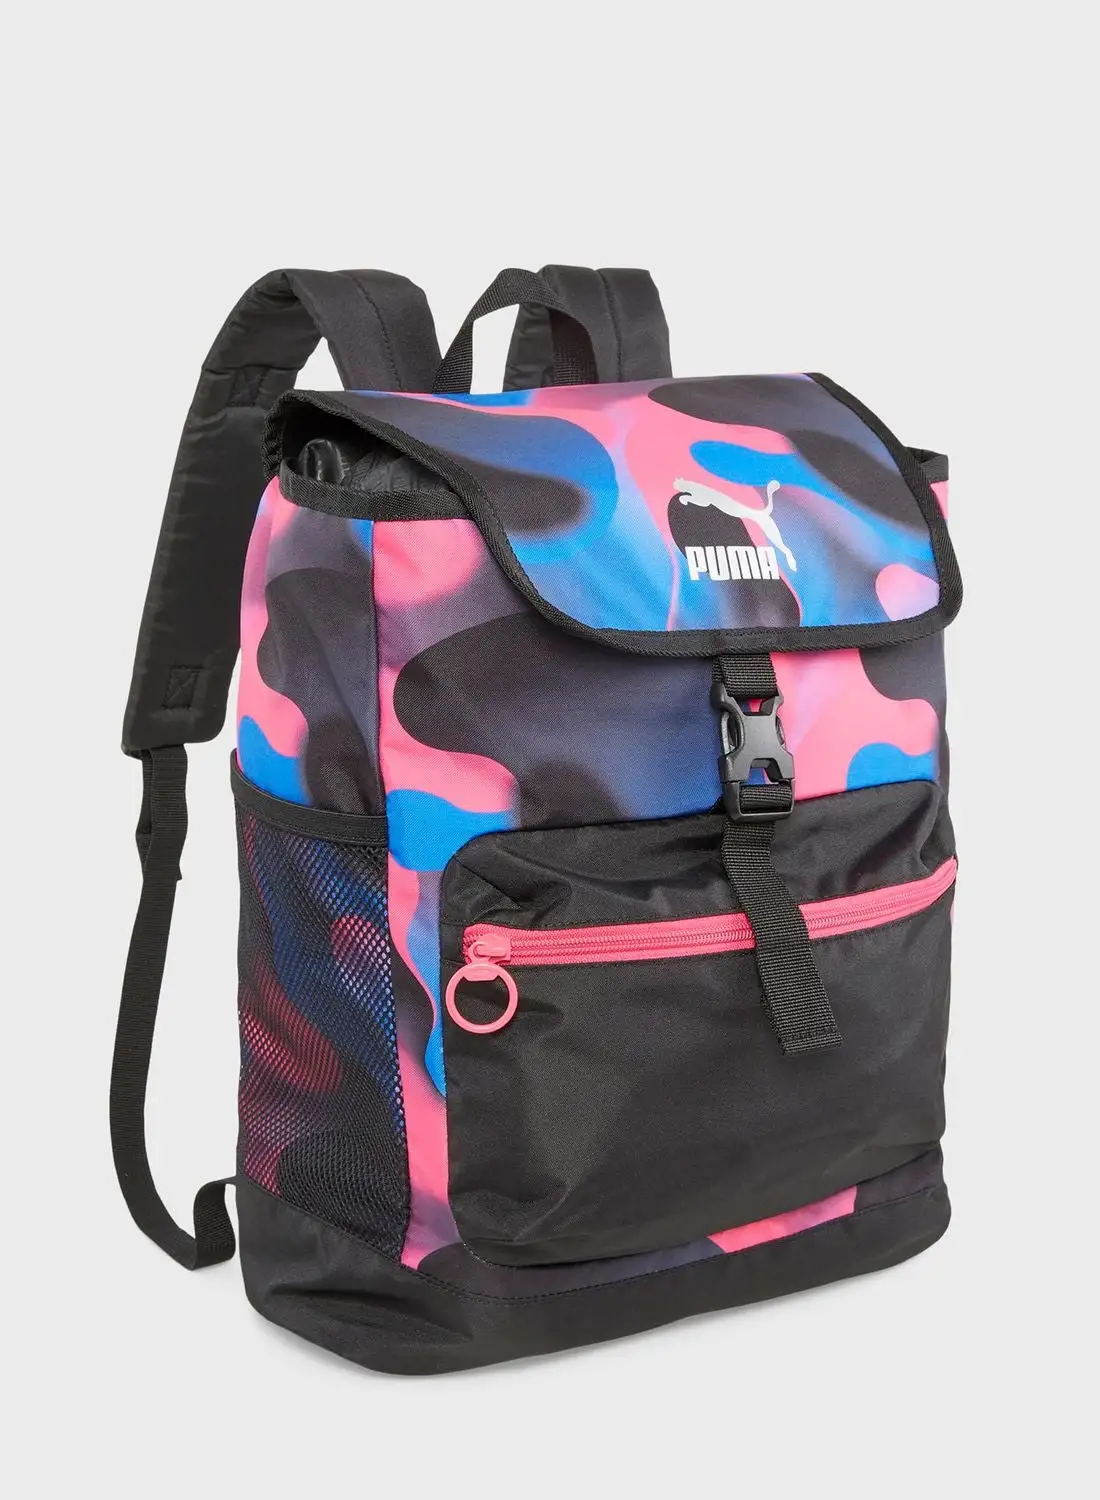 PUMA Cosmic Girl Backpack